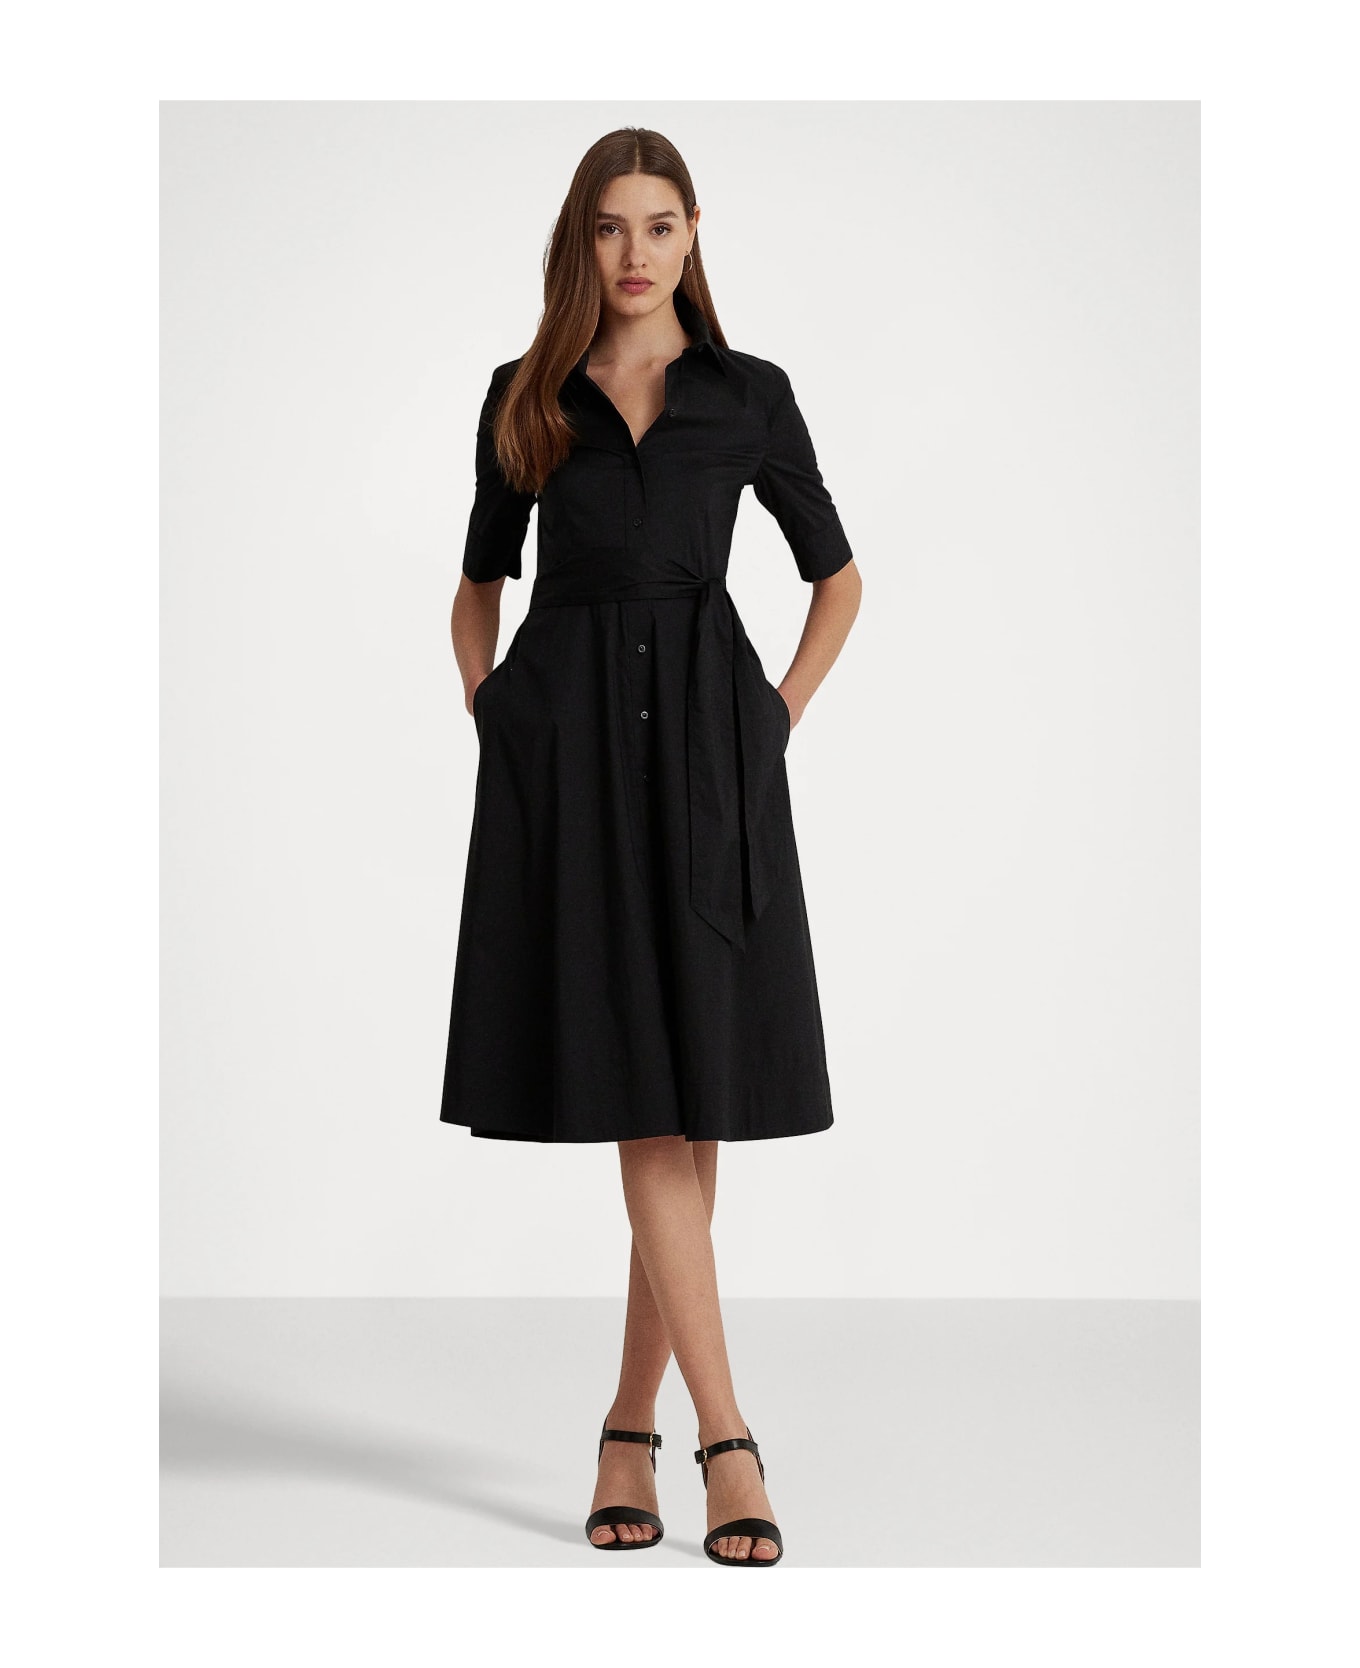 Polo Ralph Lauren Finnbarr Short Sleeve Casual Dress - Black